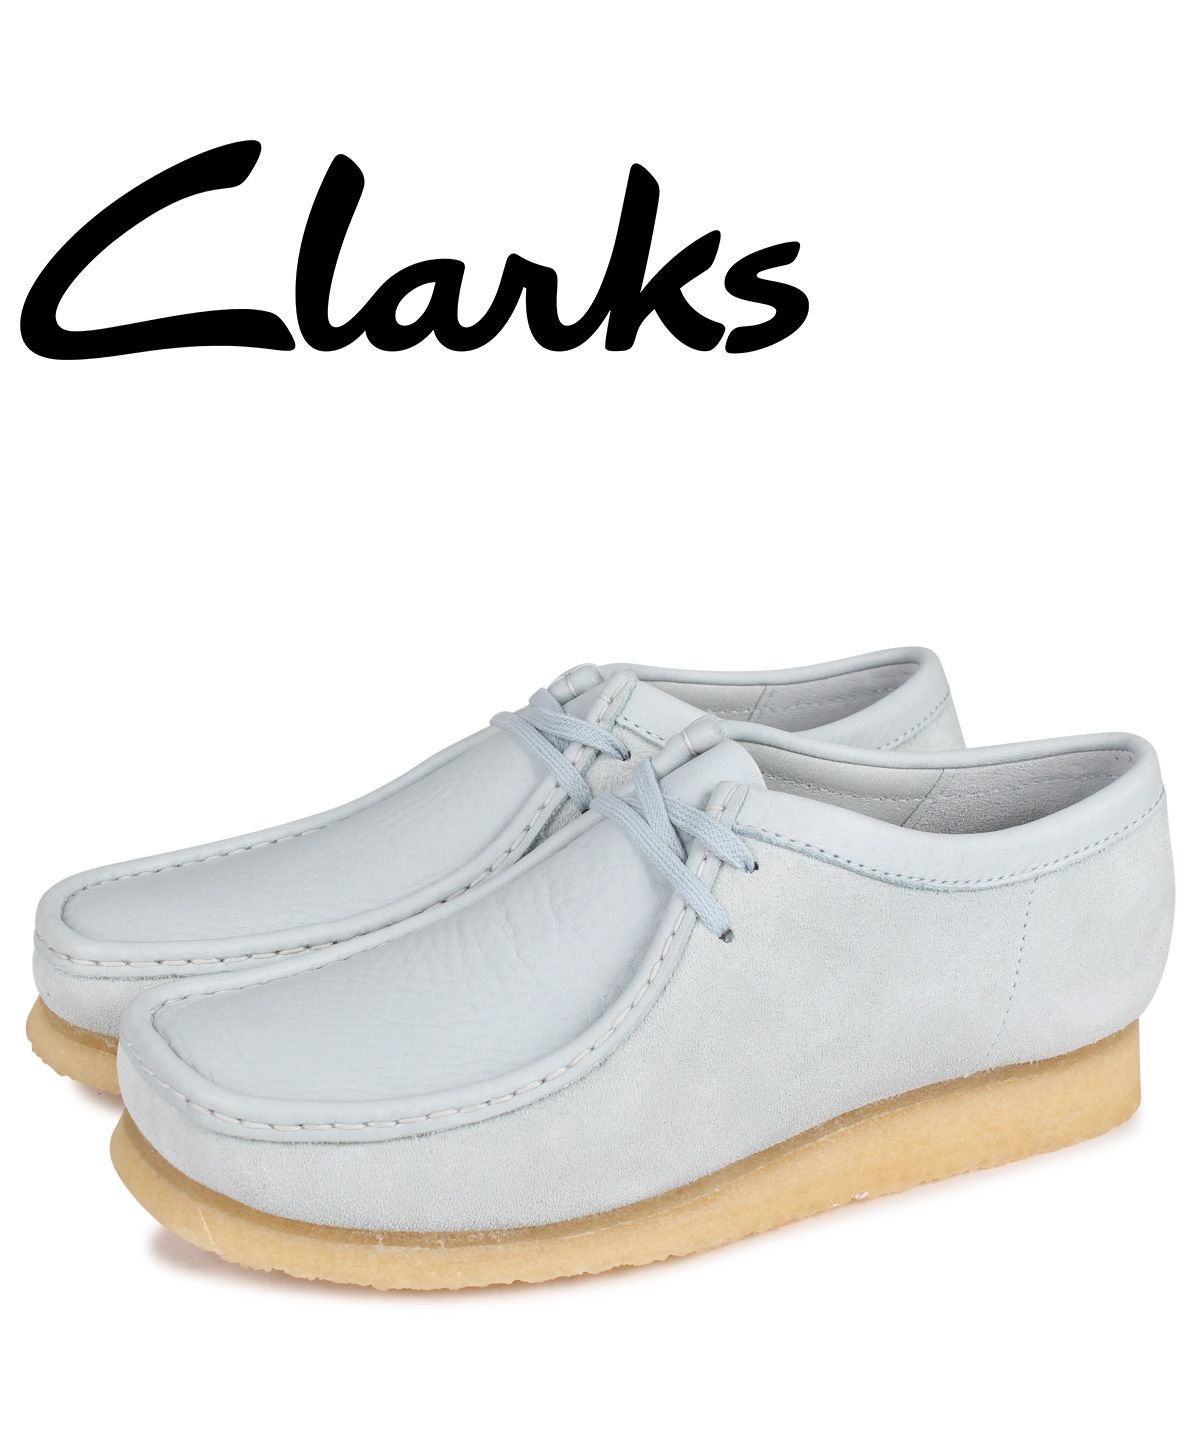 clarks クラークス ワラビー ブーツ スエード グリーン 26.5㎝ - 靴